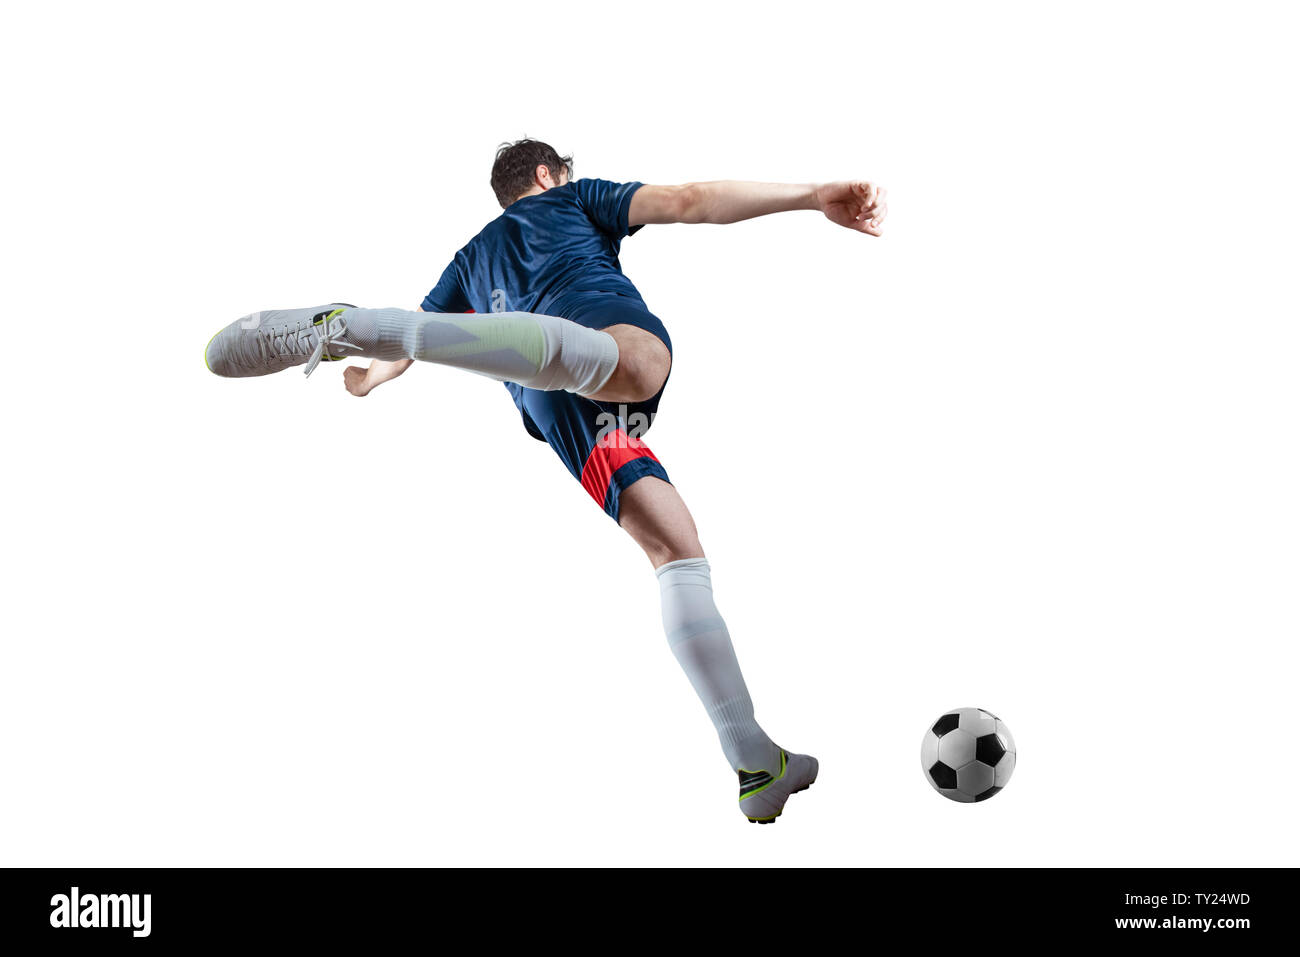 Scène de nuit football match avec player Kicking the ball avec puissance. Isolé sur fond blanc Banque D'Images